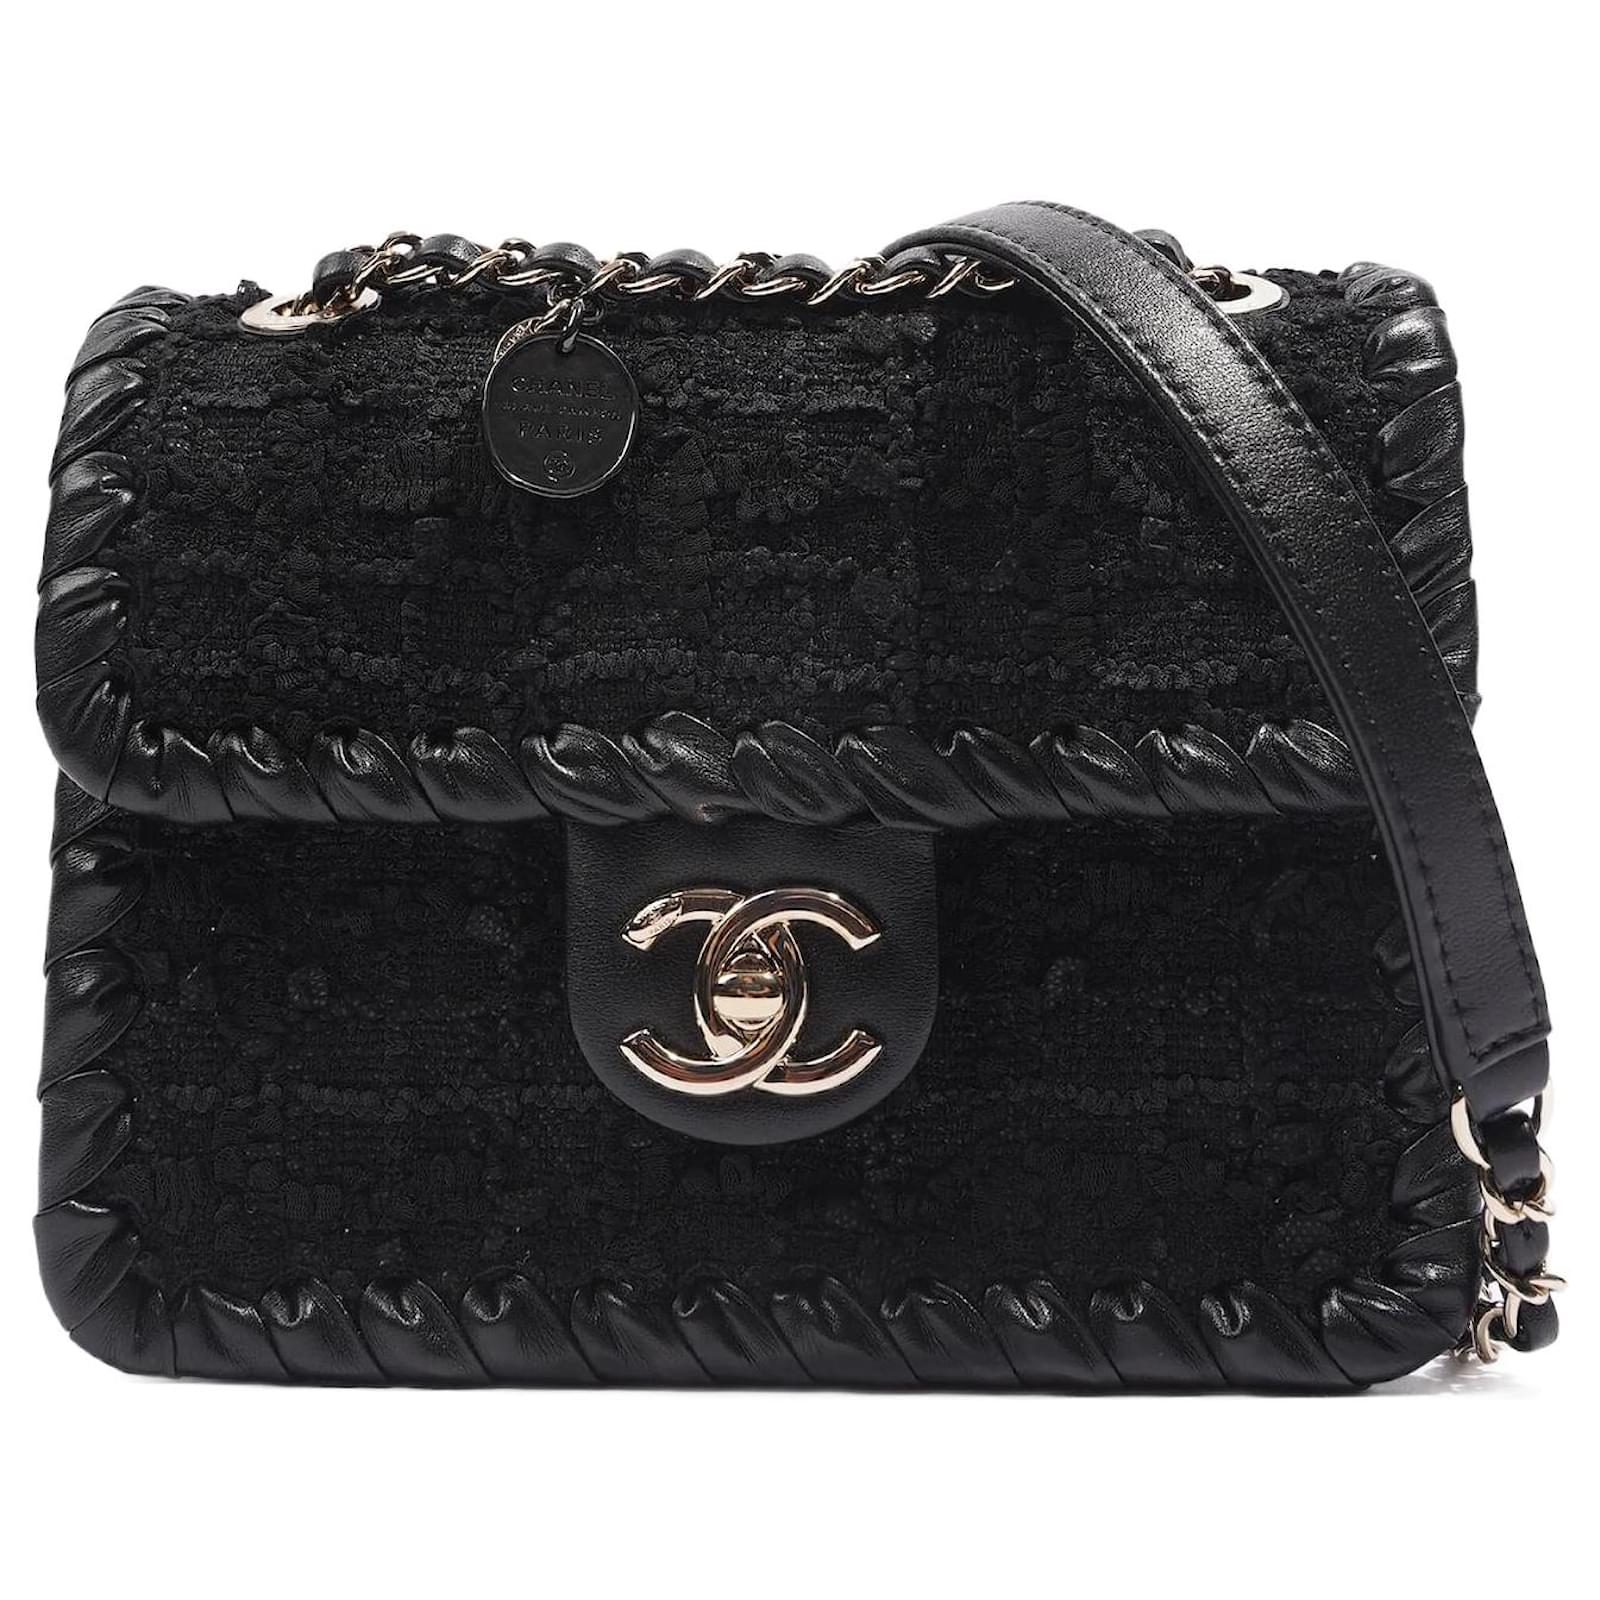 Handbags Chanel Chanel Womens Flap Bag Black Tweed Mini